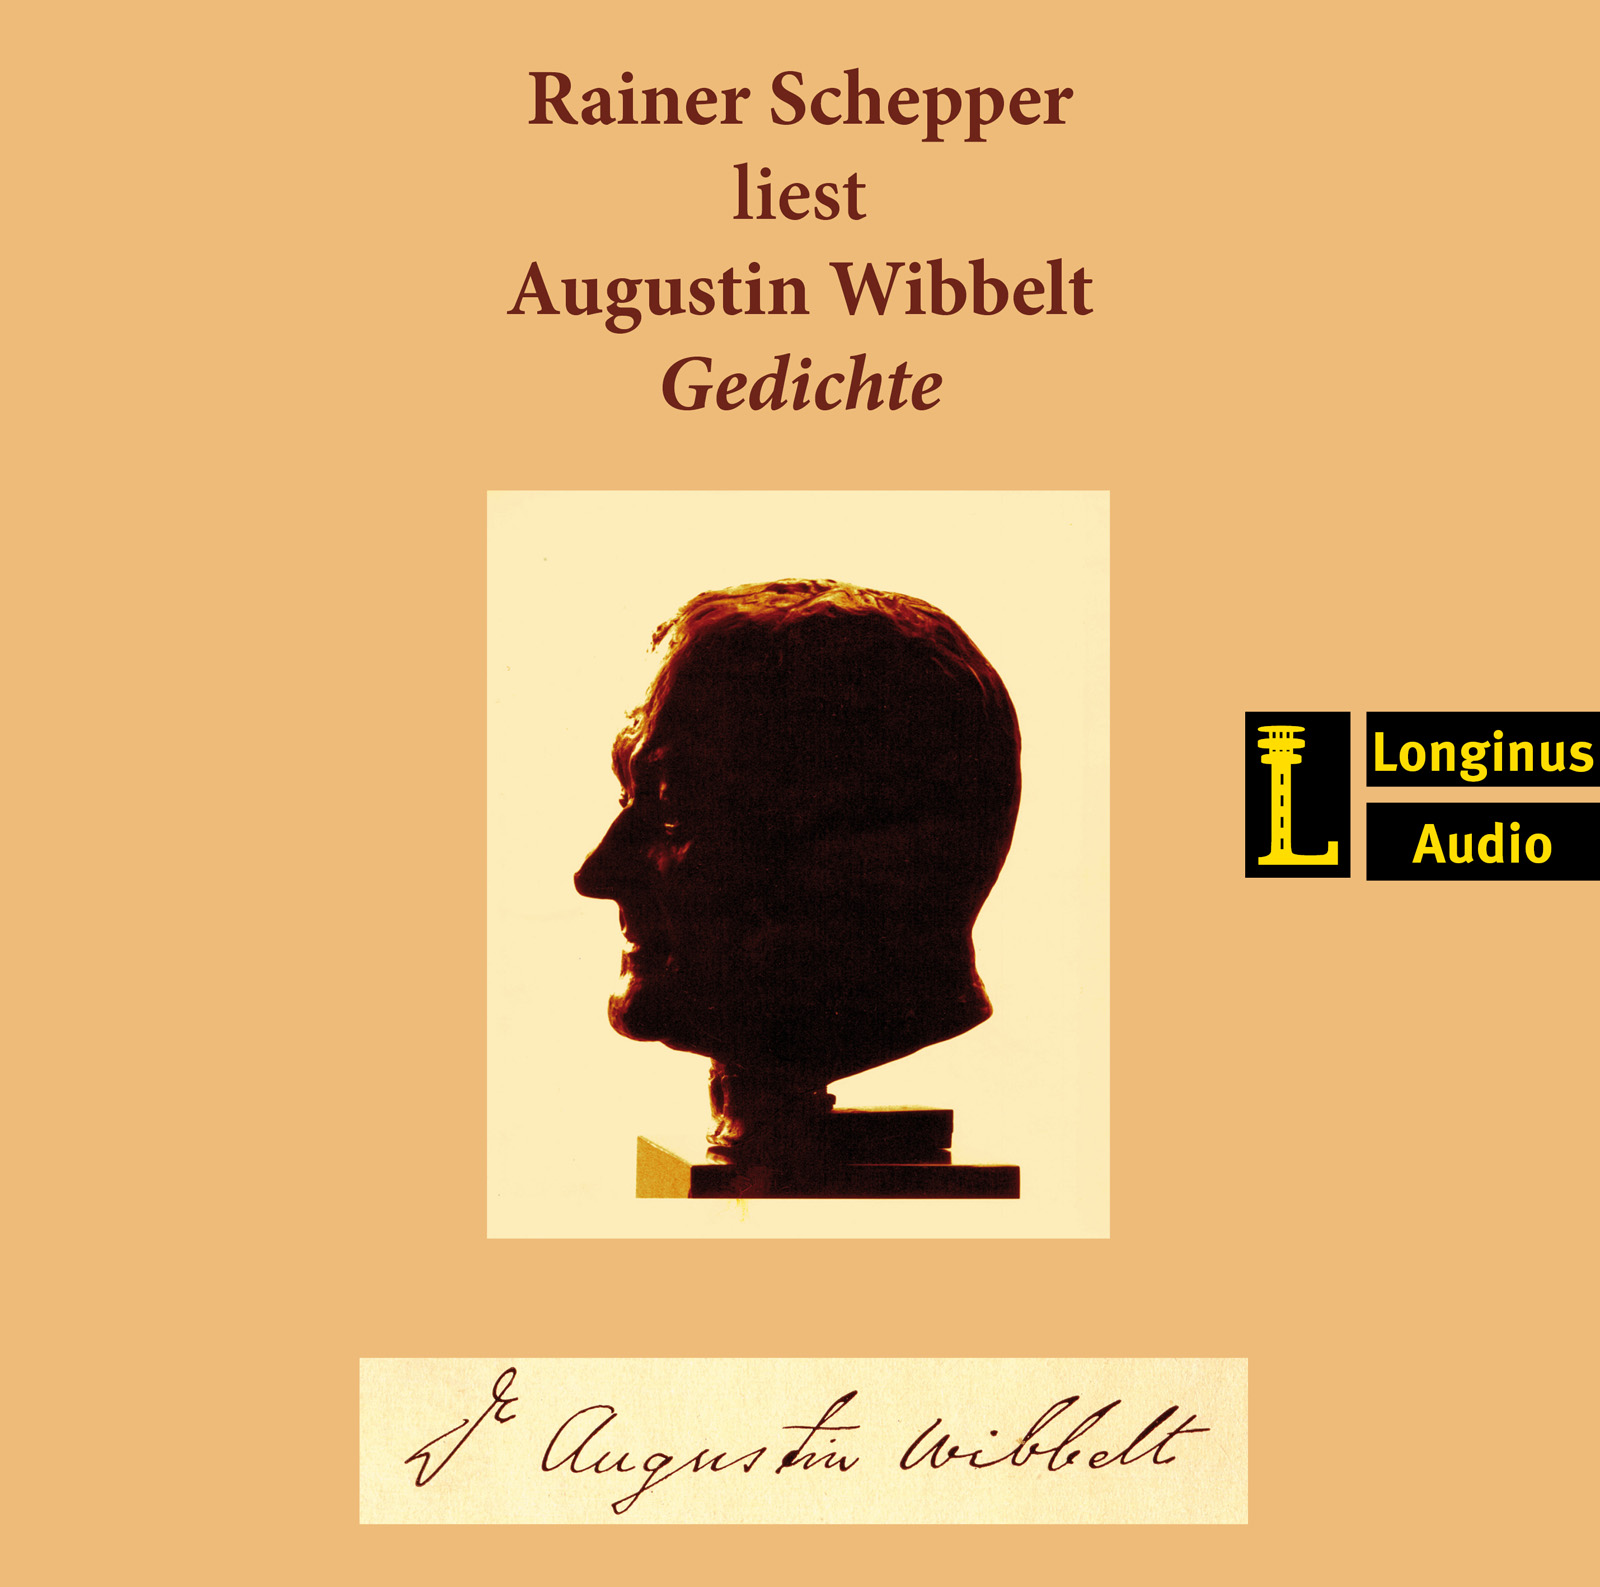 Rainer Schepper liest Gedichte von Augustin Wibbelt - Hörbuch